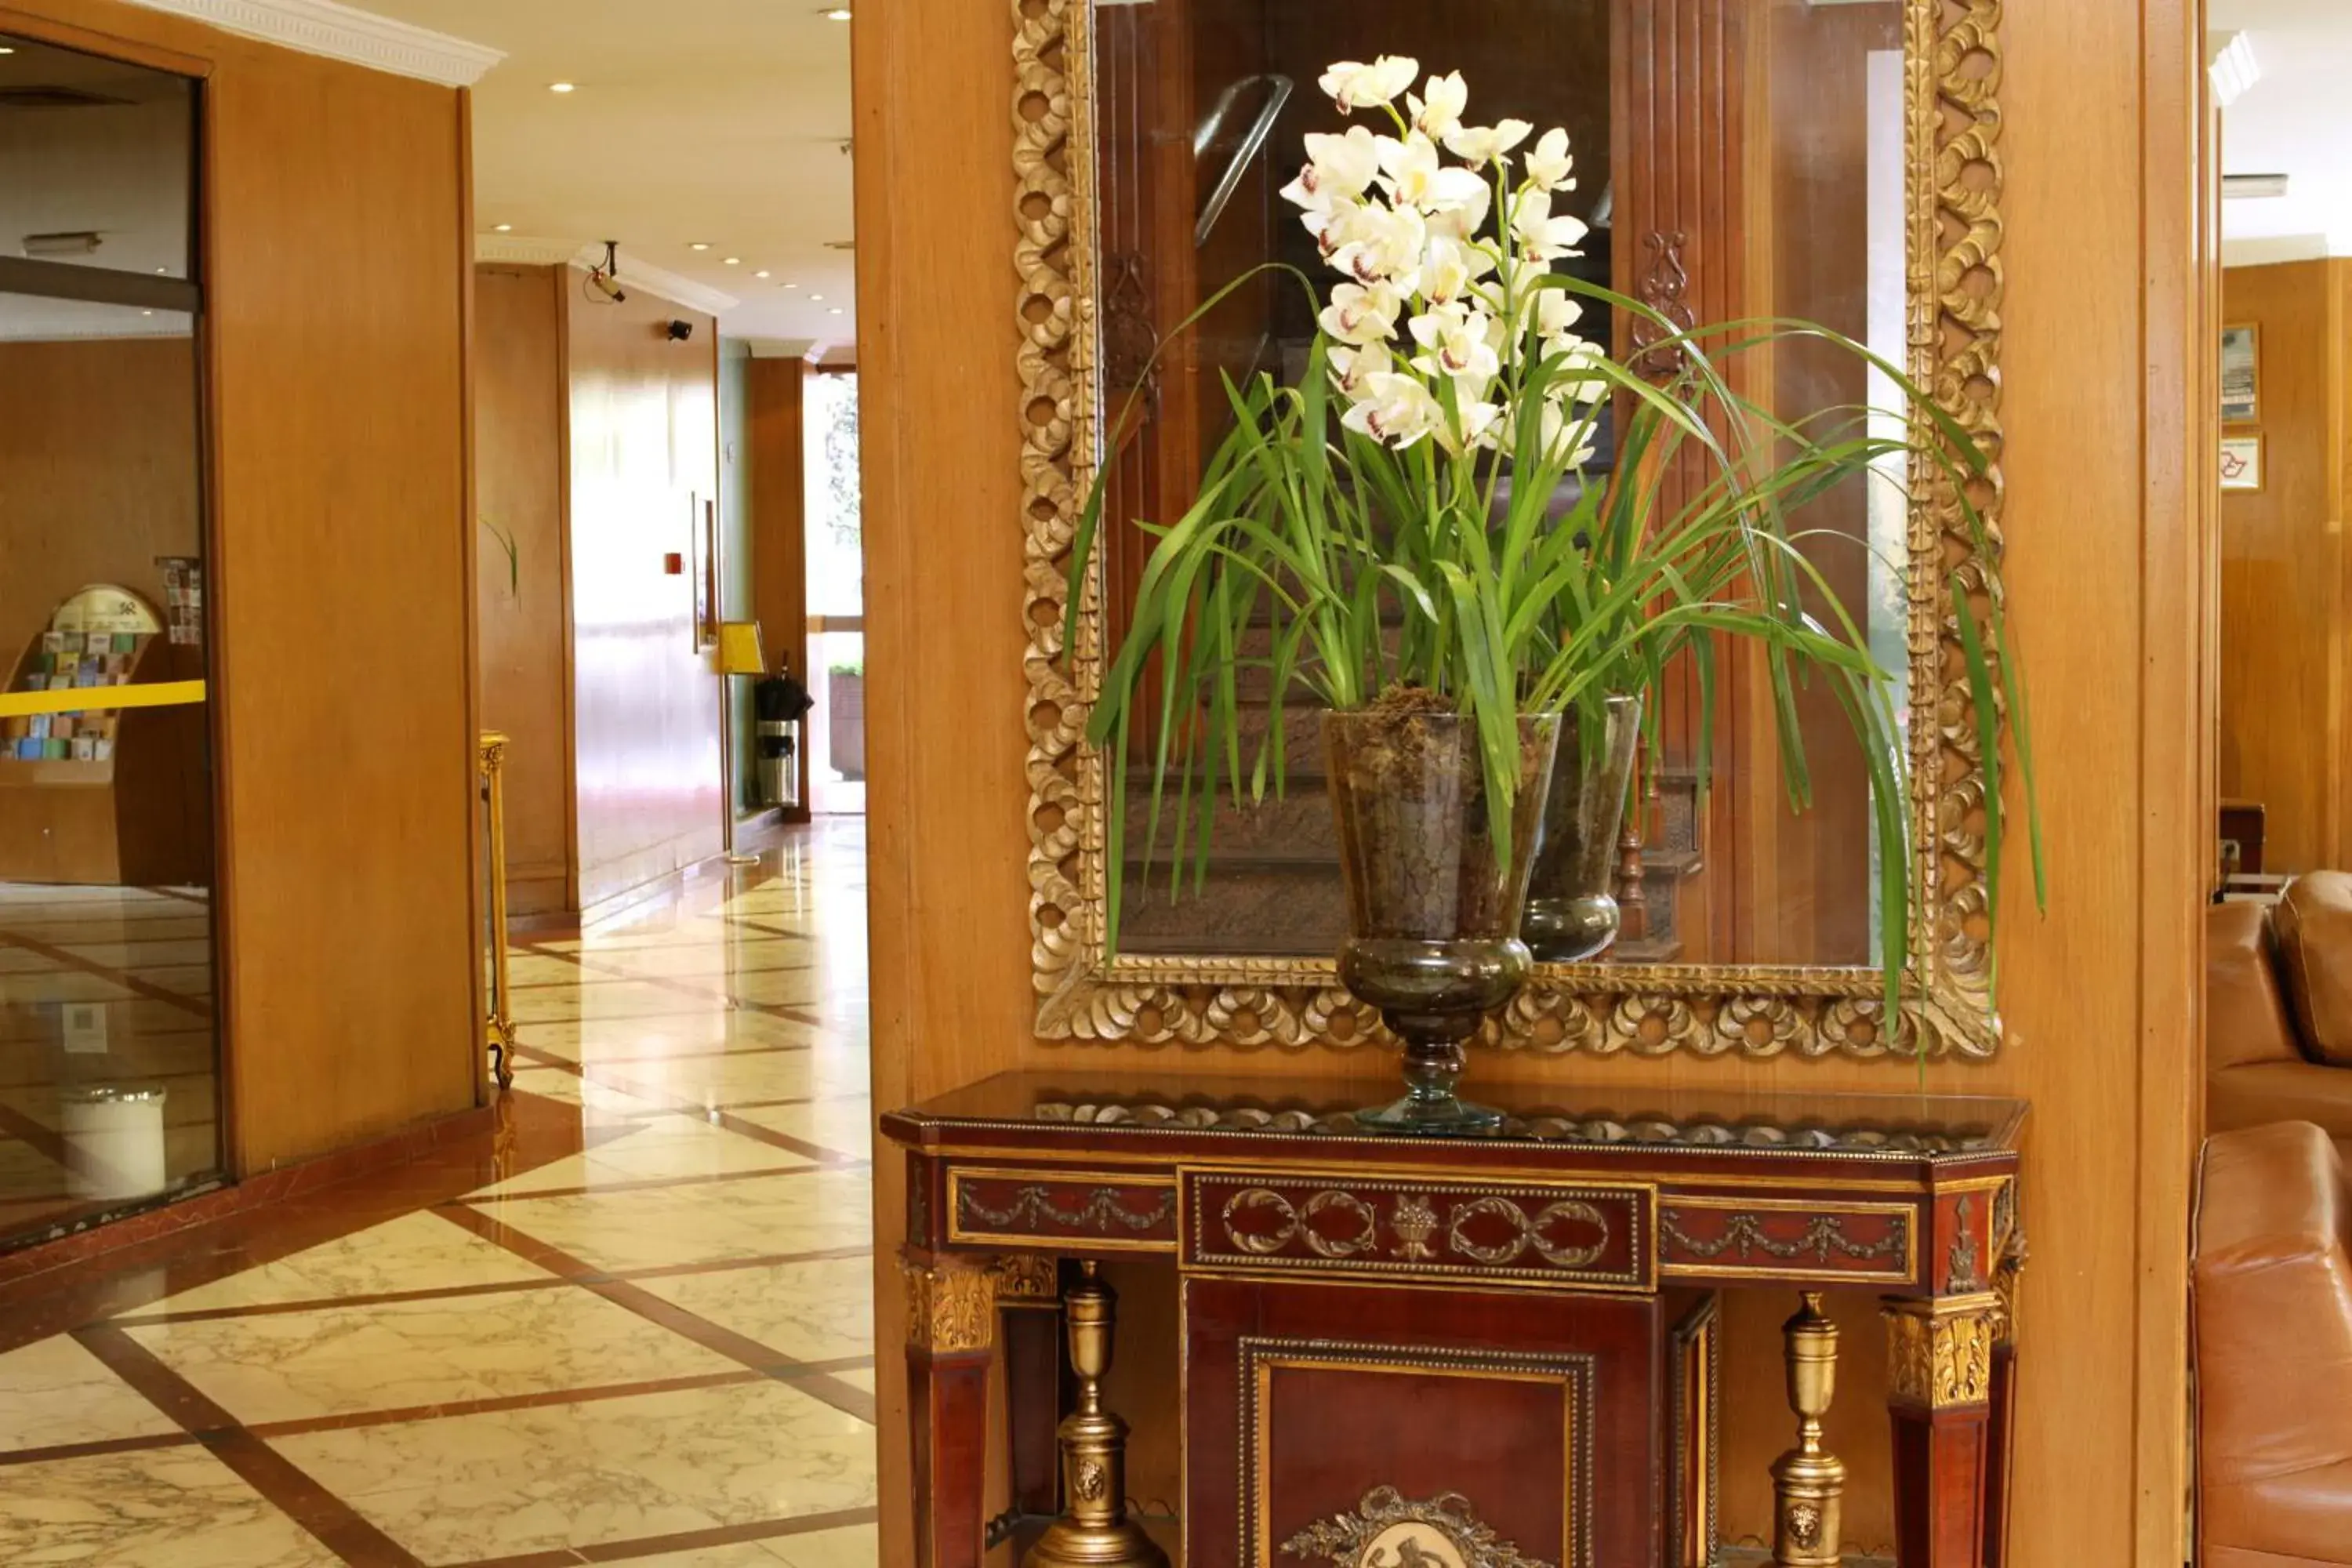 Lobby or reception in San Raphael Hotel